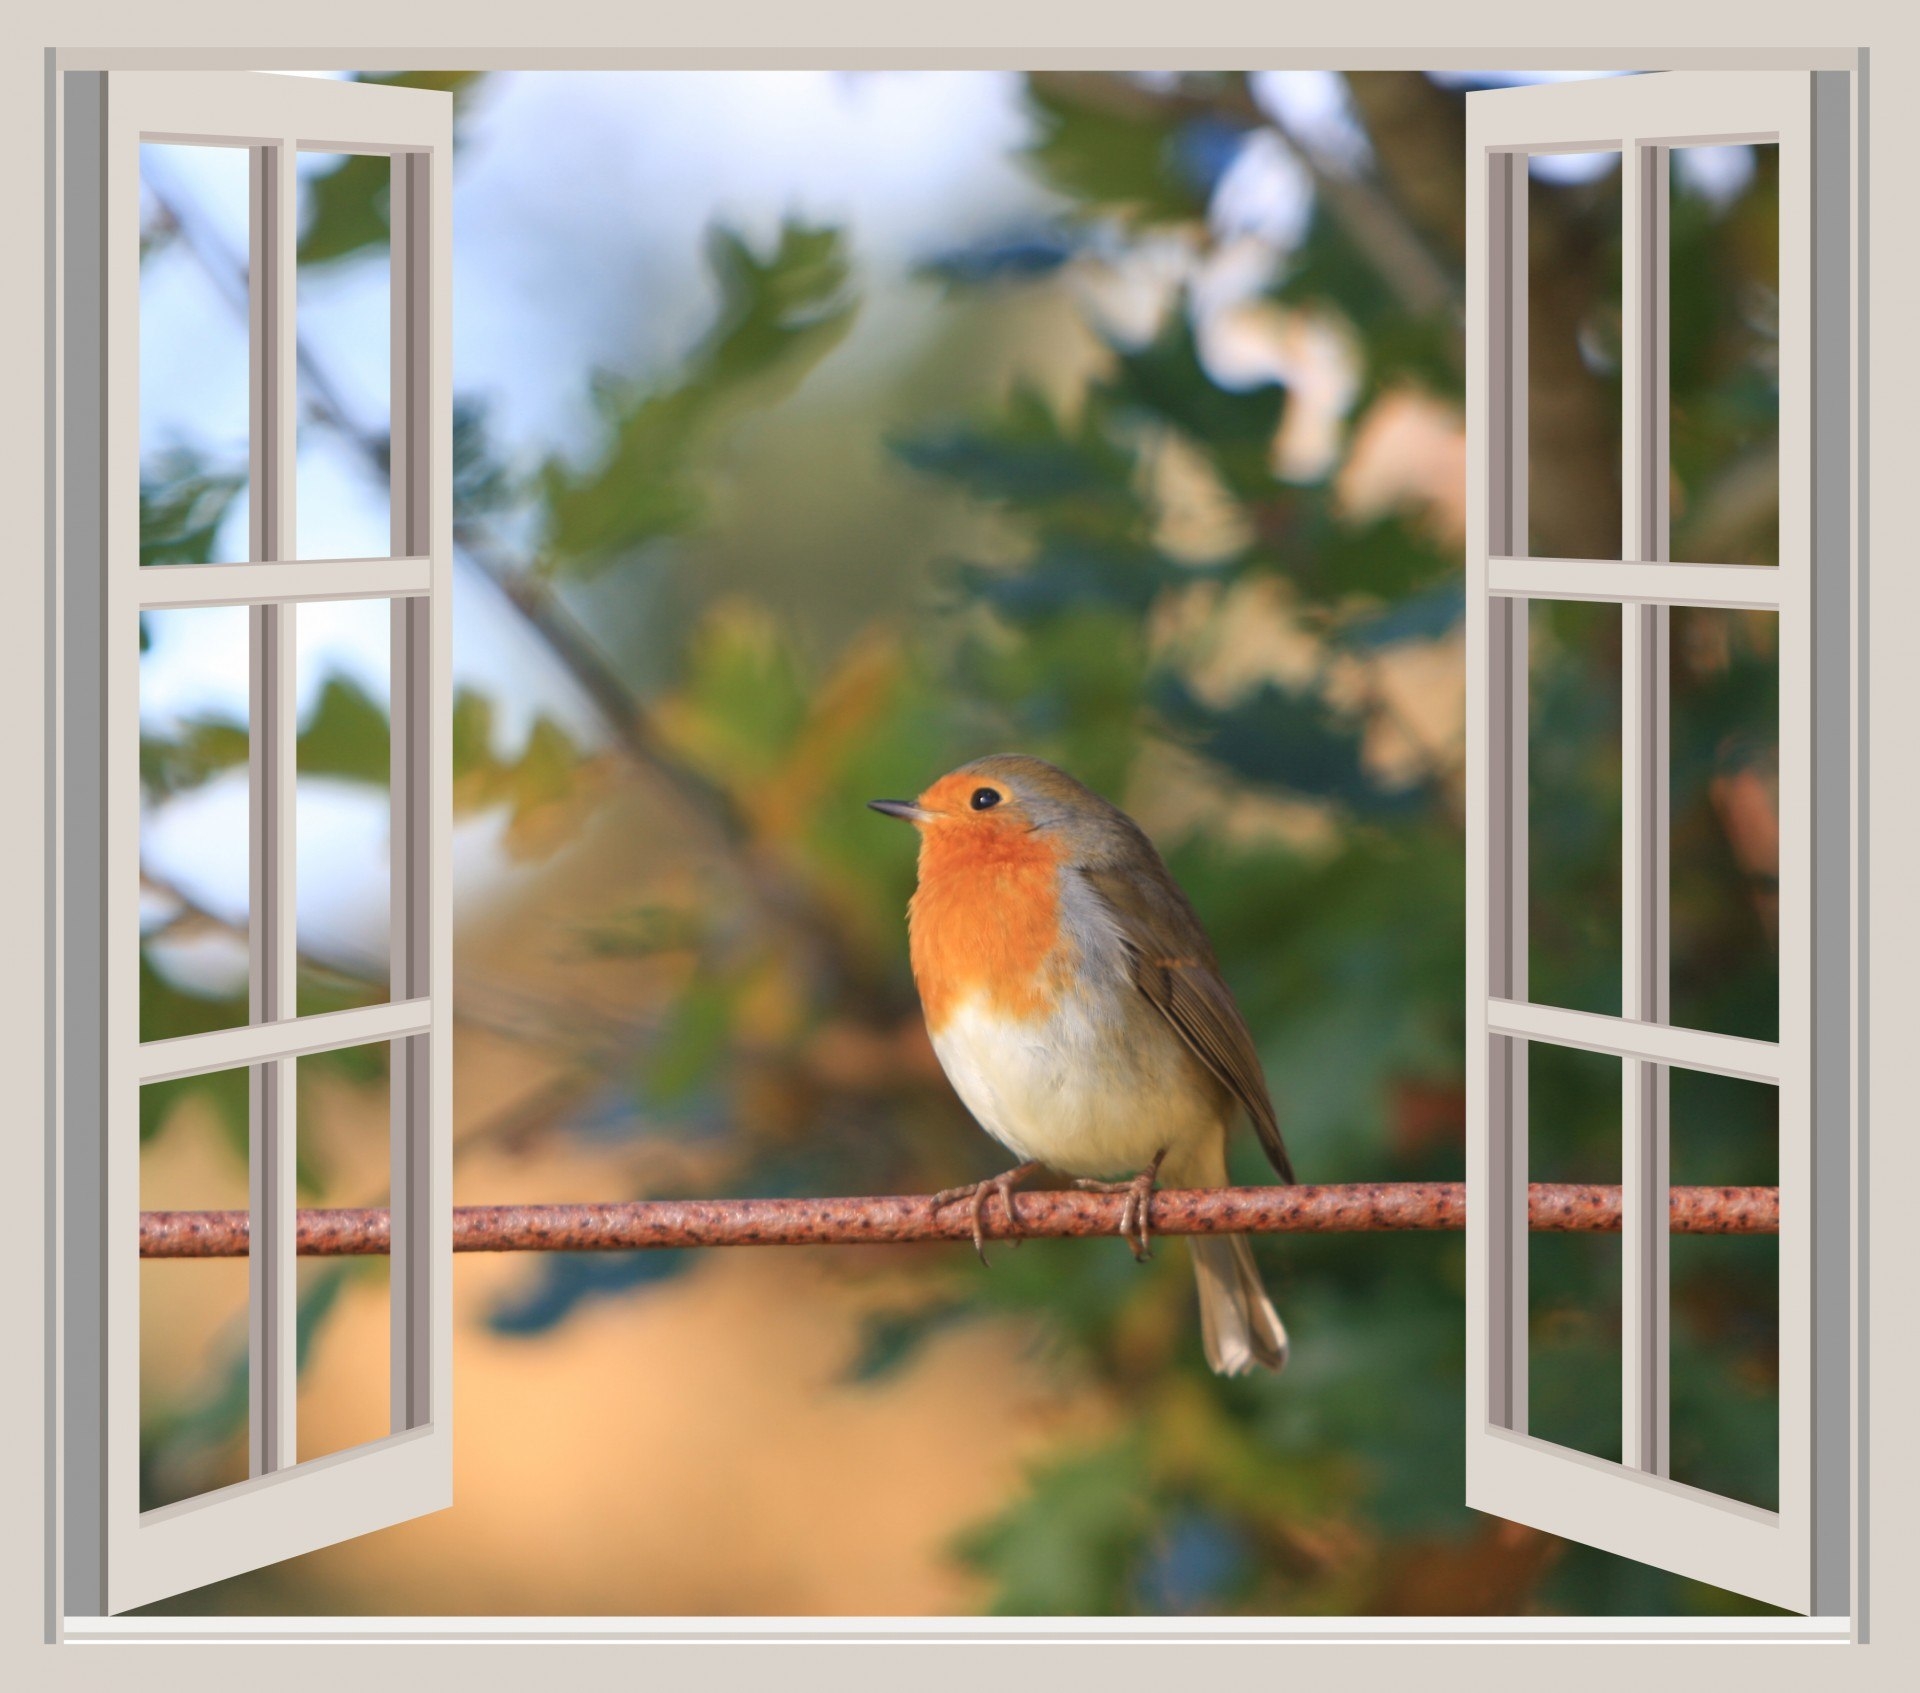 Птичка стучит в окно. Птичка на подоконнике. Птицы на окна. Птички за окном.